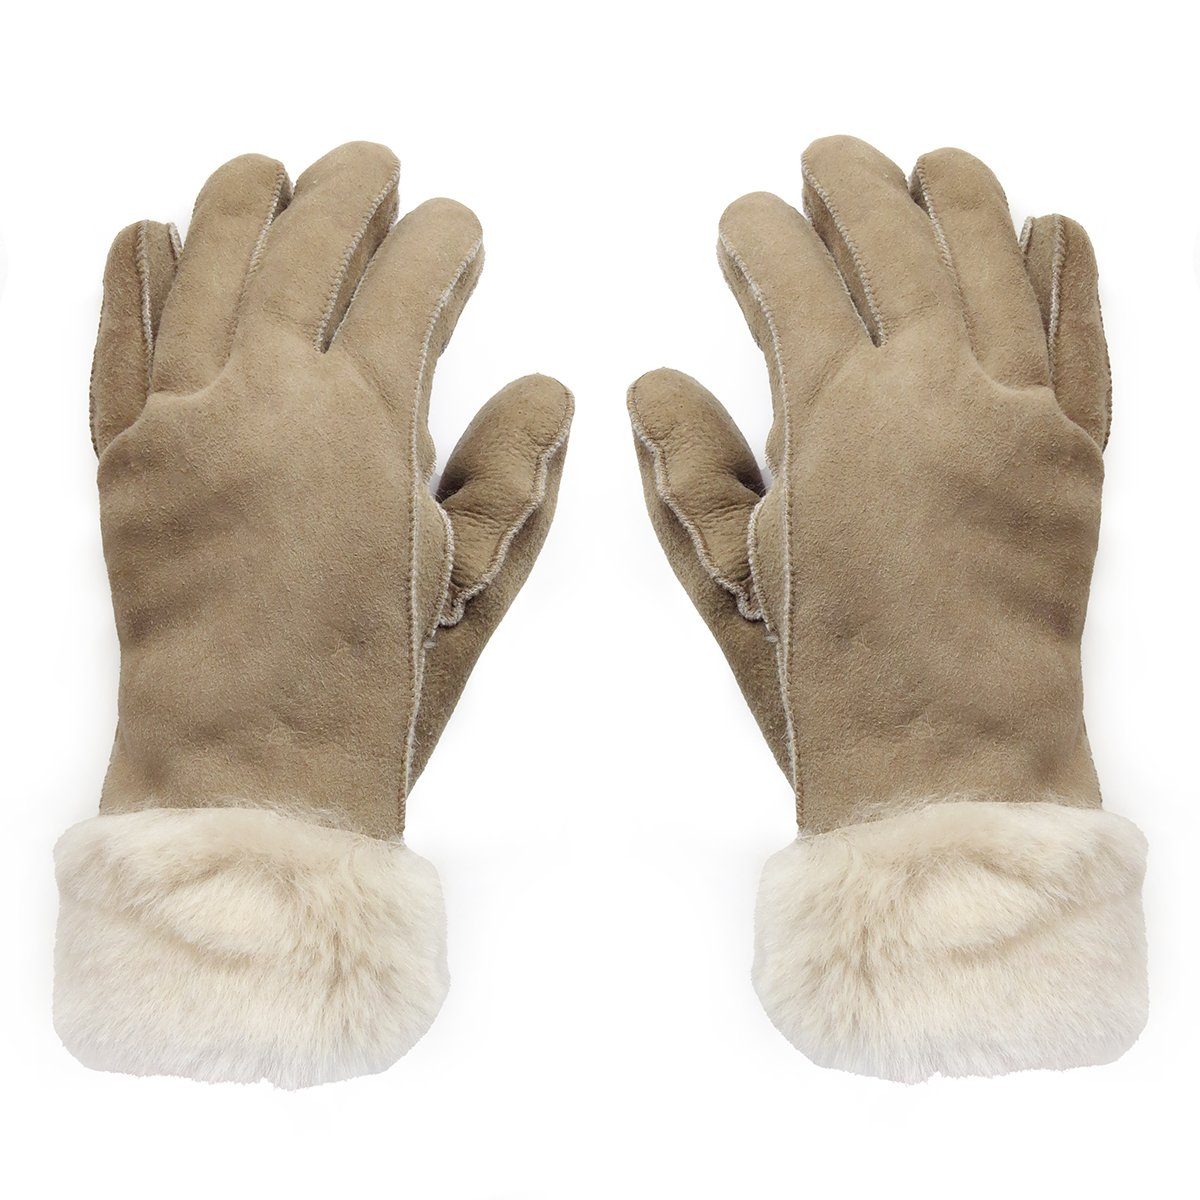 Sonia Originelli Winter-Arbeitshandschuhe Handschuhe aus Lammfell Schaffell unisex hochwertig warm Farben können abweichen, Struktur des Fells kann abweichen hellbeige